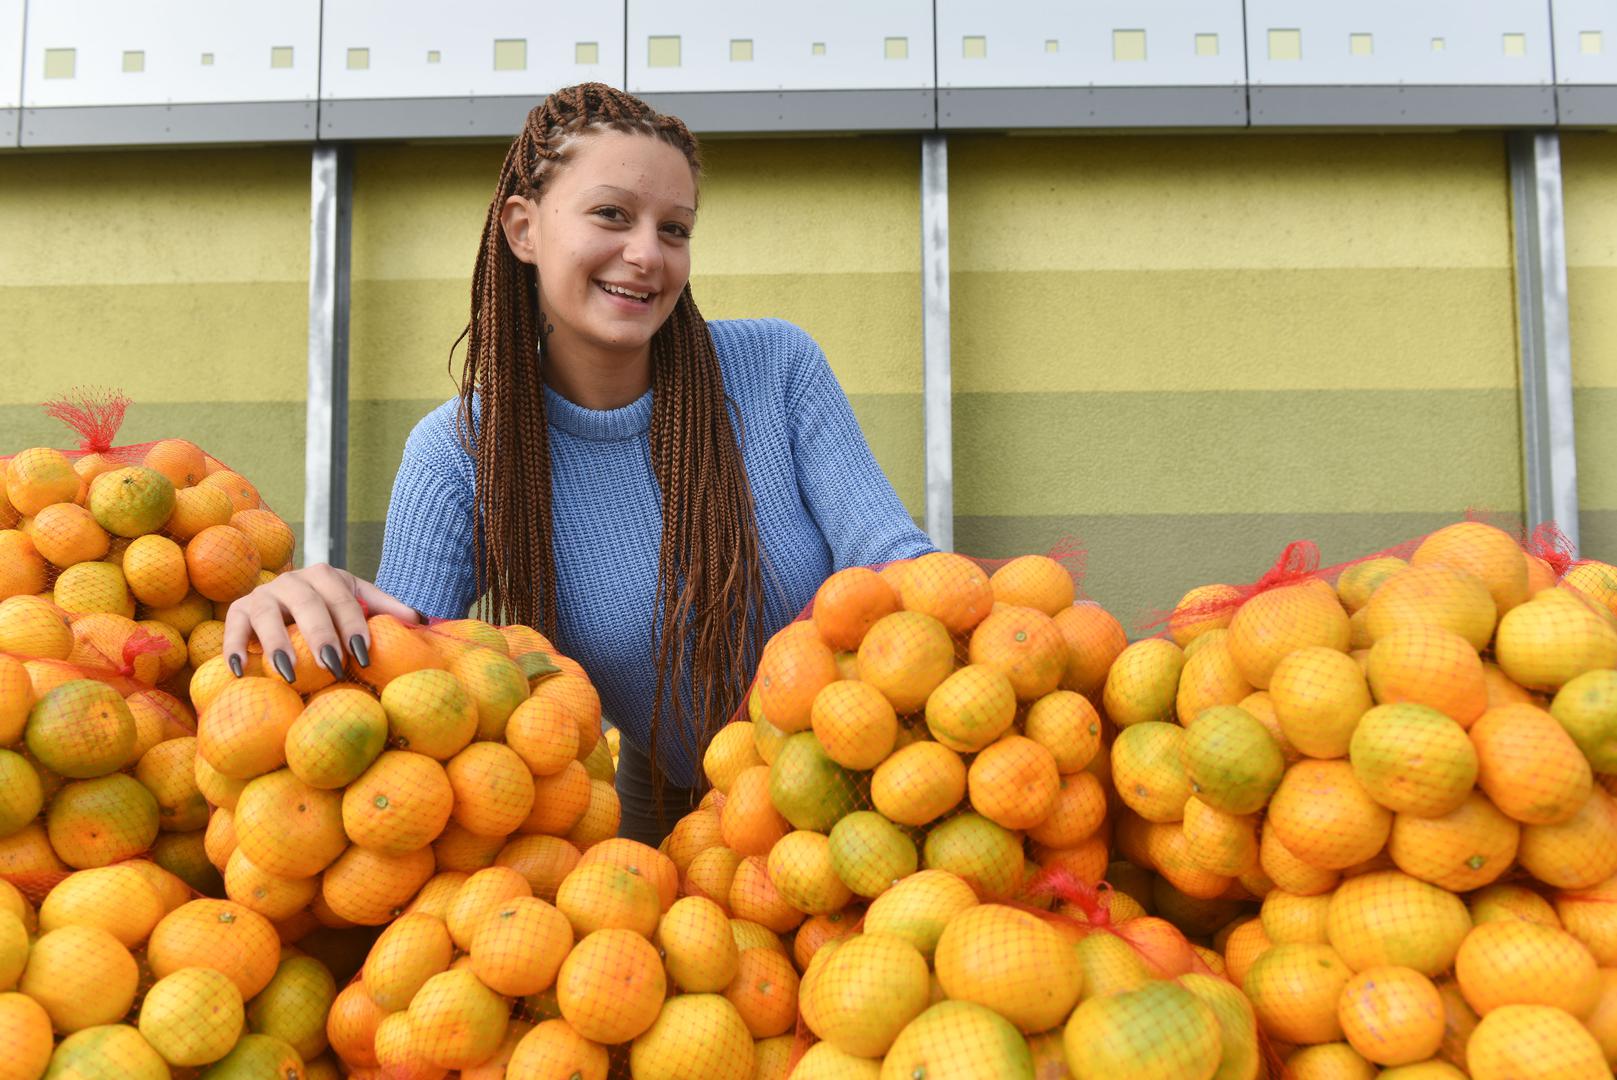 Najpoznatija prodavačica mandarina u Hrvatskoj Kristina Penava, od milja Kristina Mandarina, ponovno se našla za štandom, ali ovaj put ispred trgovačkog centra na Jankomiru.